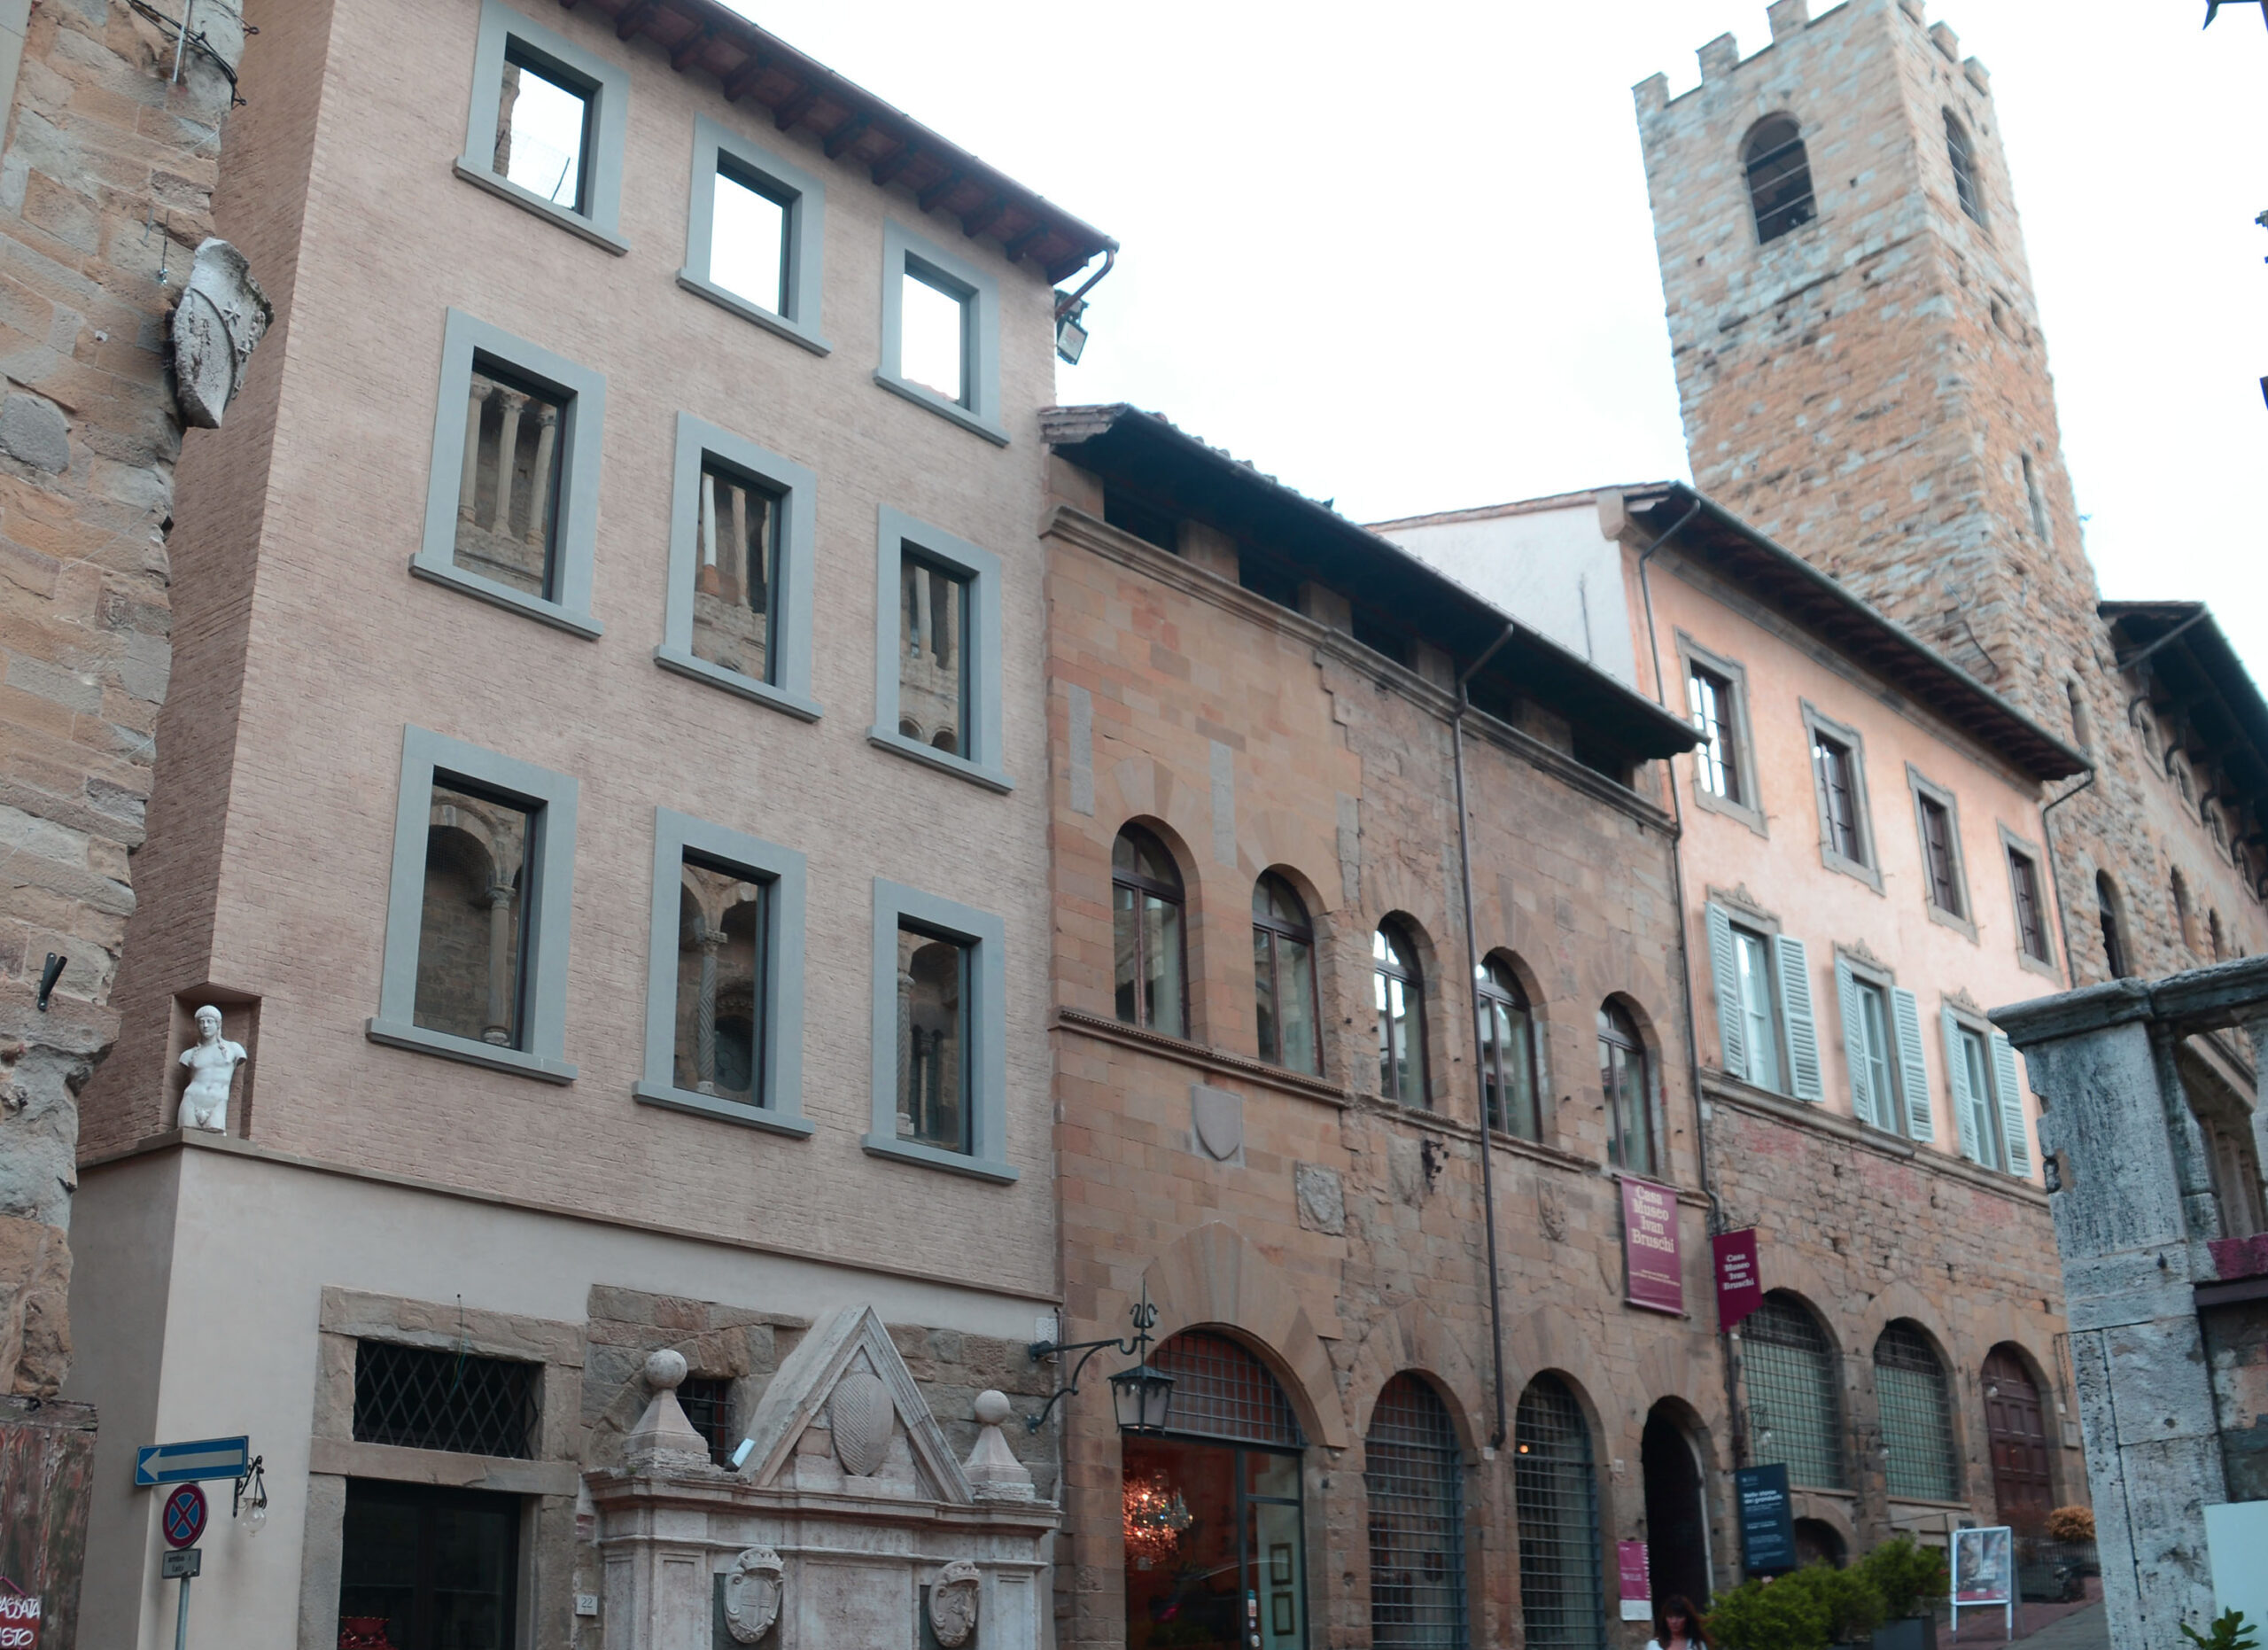 Casa Museo Ivan Bruschi inaugura la mostra “La scultura di Donatello nelle fotografie di Antonio Quattrone”